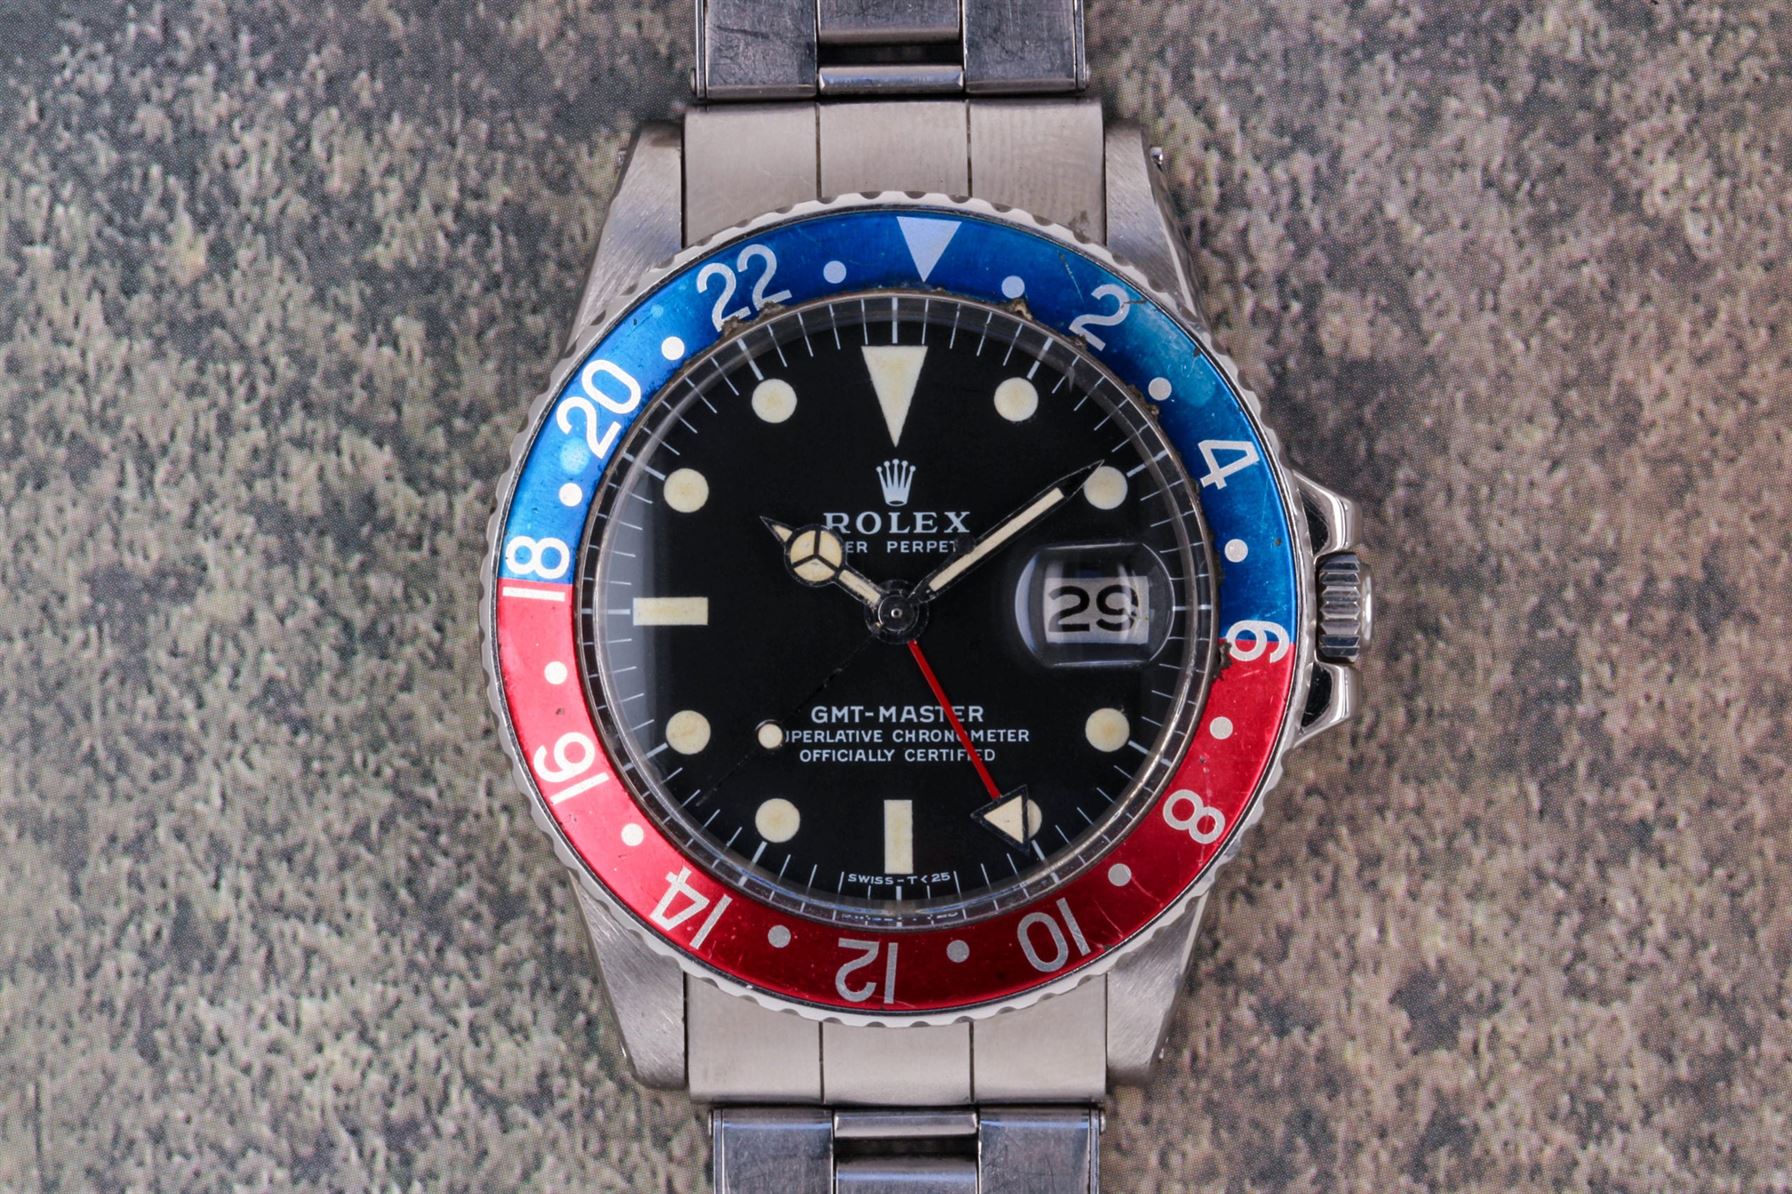 Rolex 1675” GMT-Master - Menta Watches